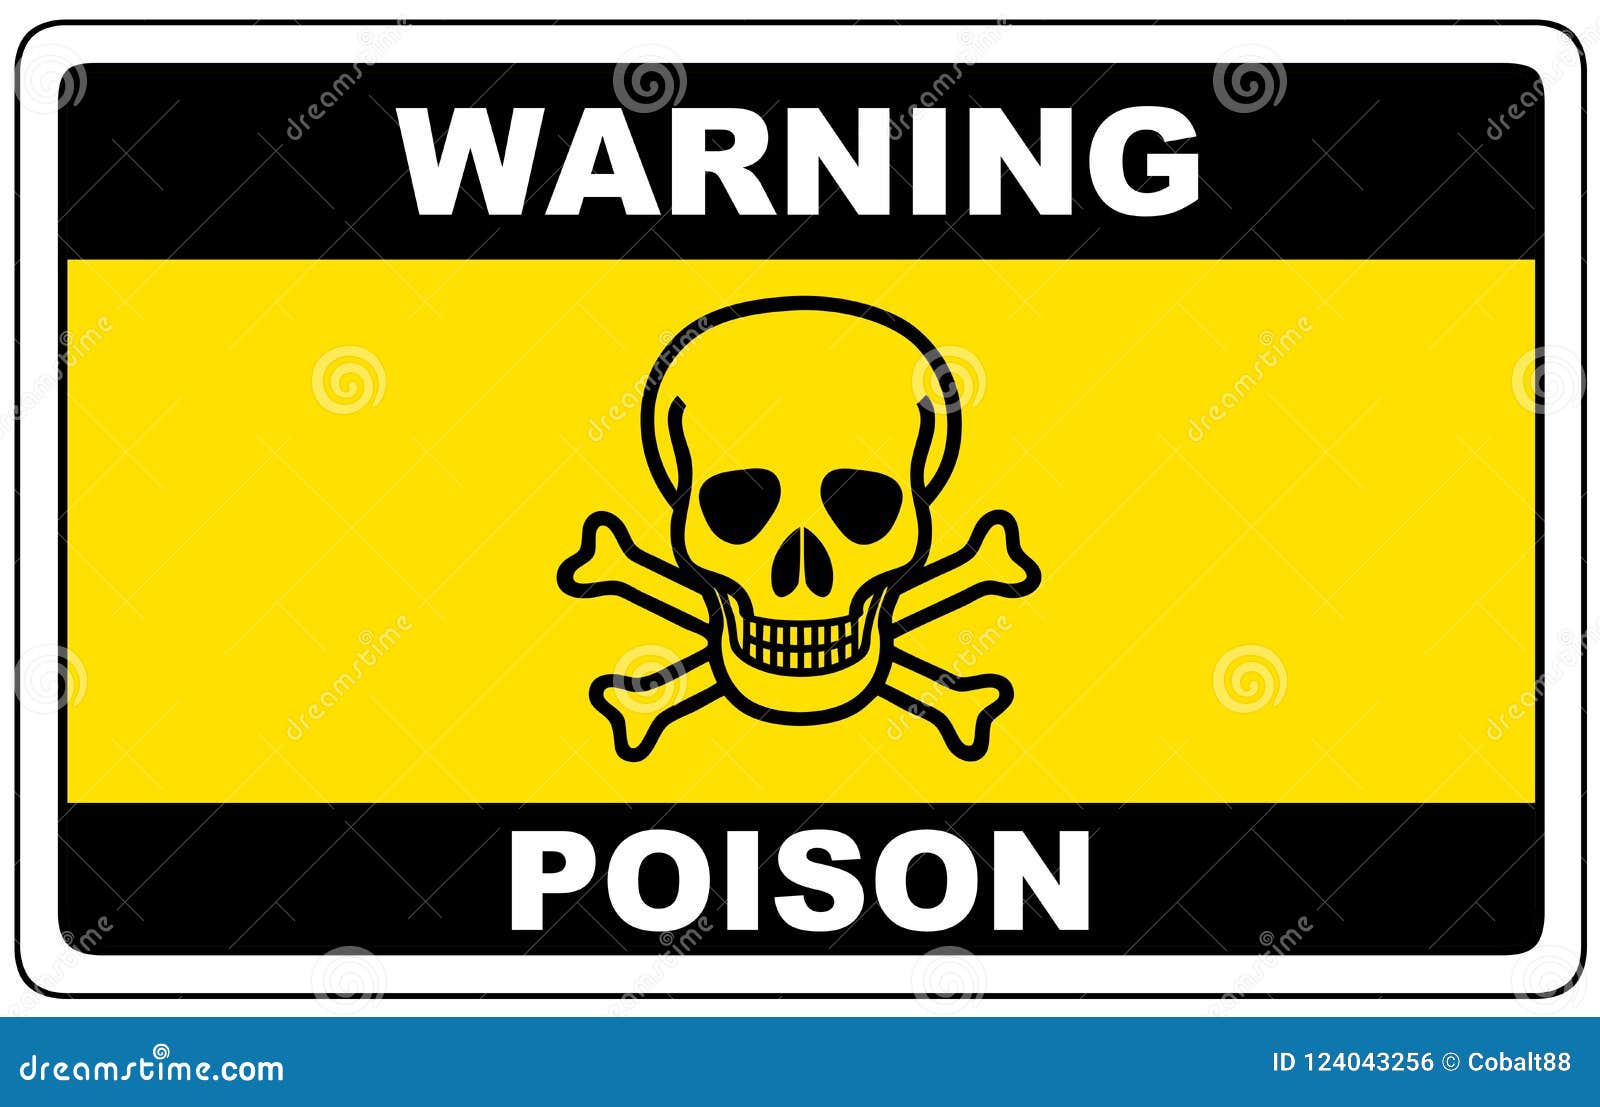 poison, danger sign warning